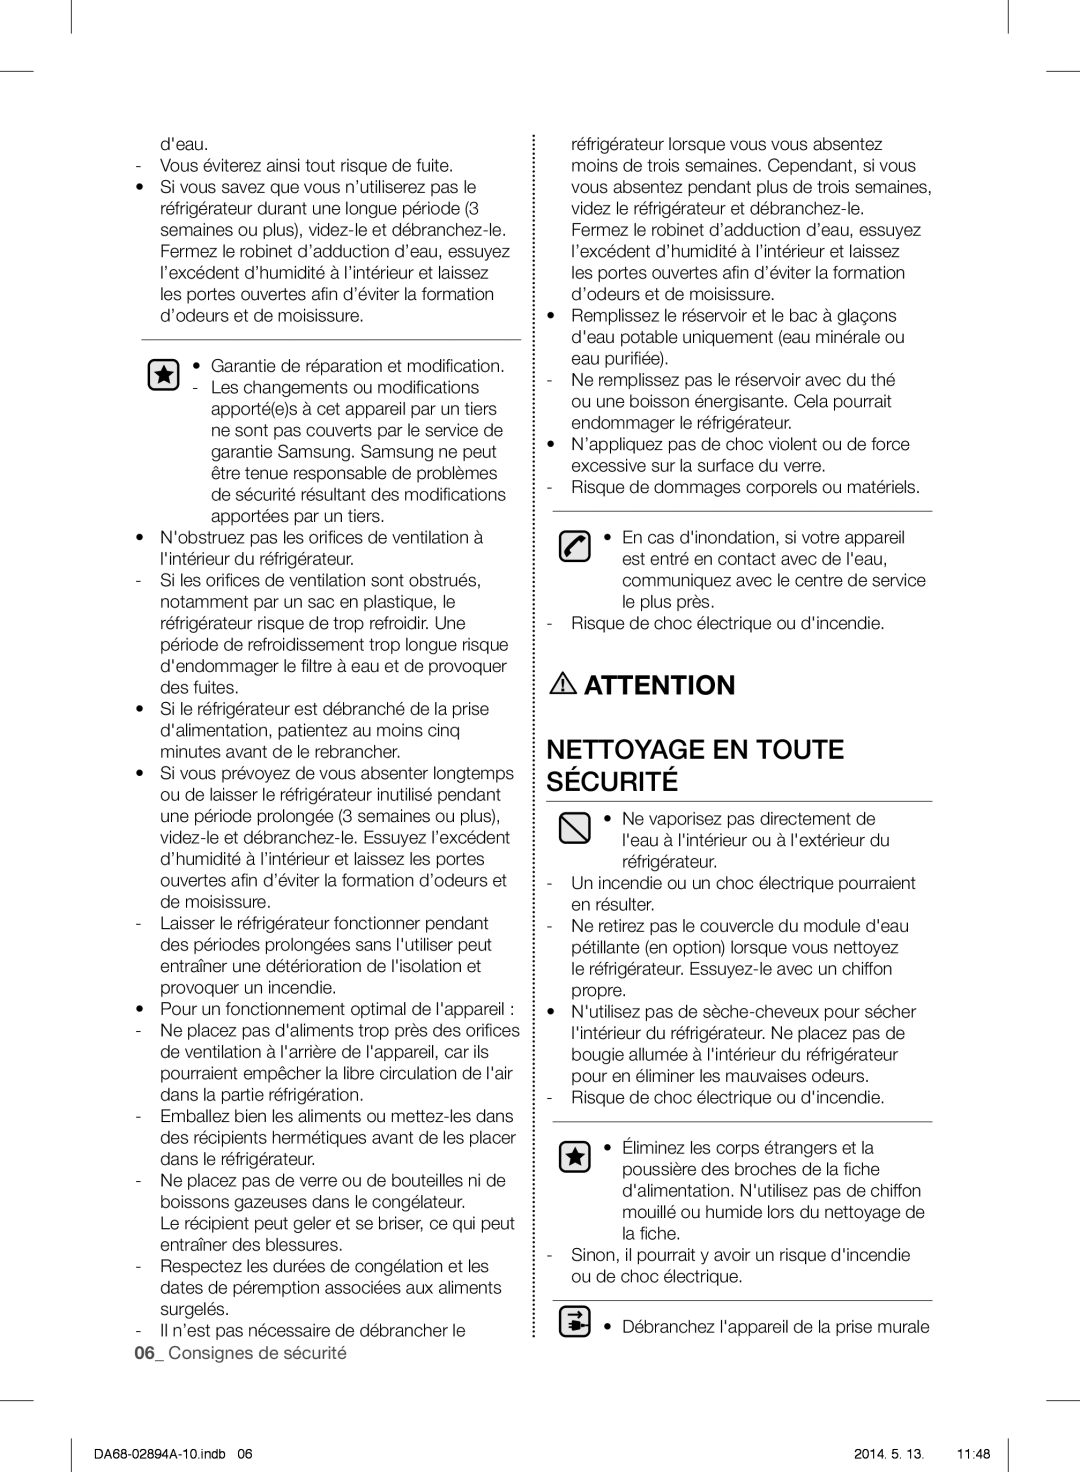 Samsung RF31FMESBSR user manual Nettoyage En Toute Sécurité 